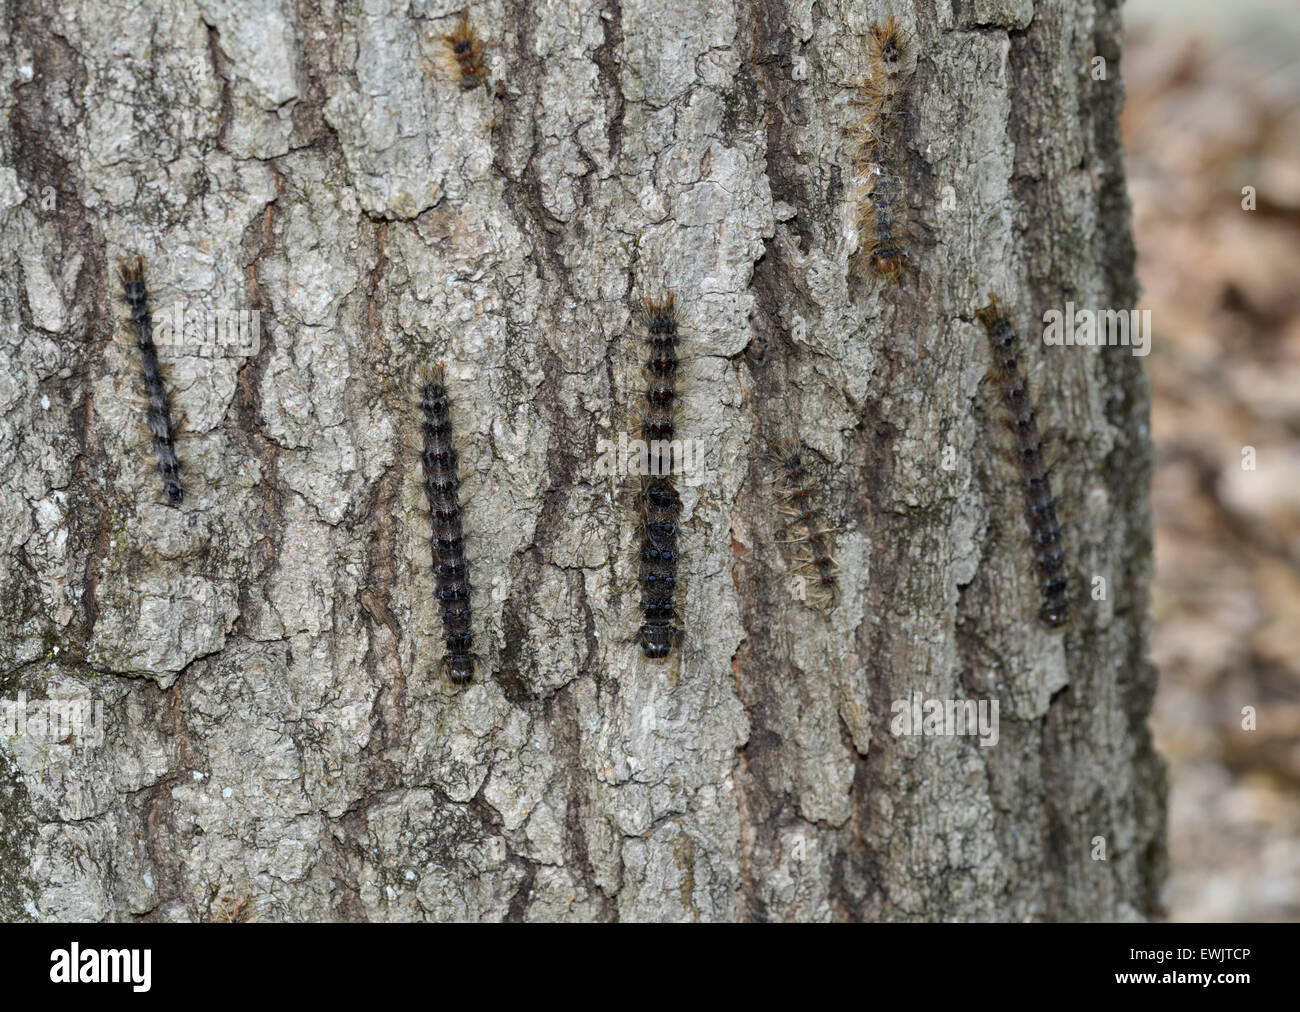 Gypsy moth caterpillars, Lymantria dispar, on trunk of tree, NJ, eastern N.A. Stock Photo